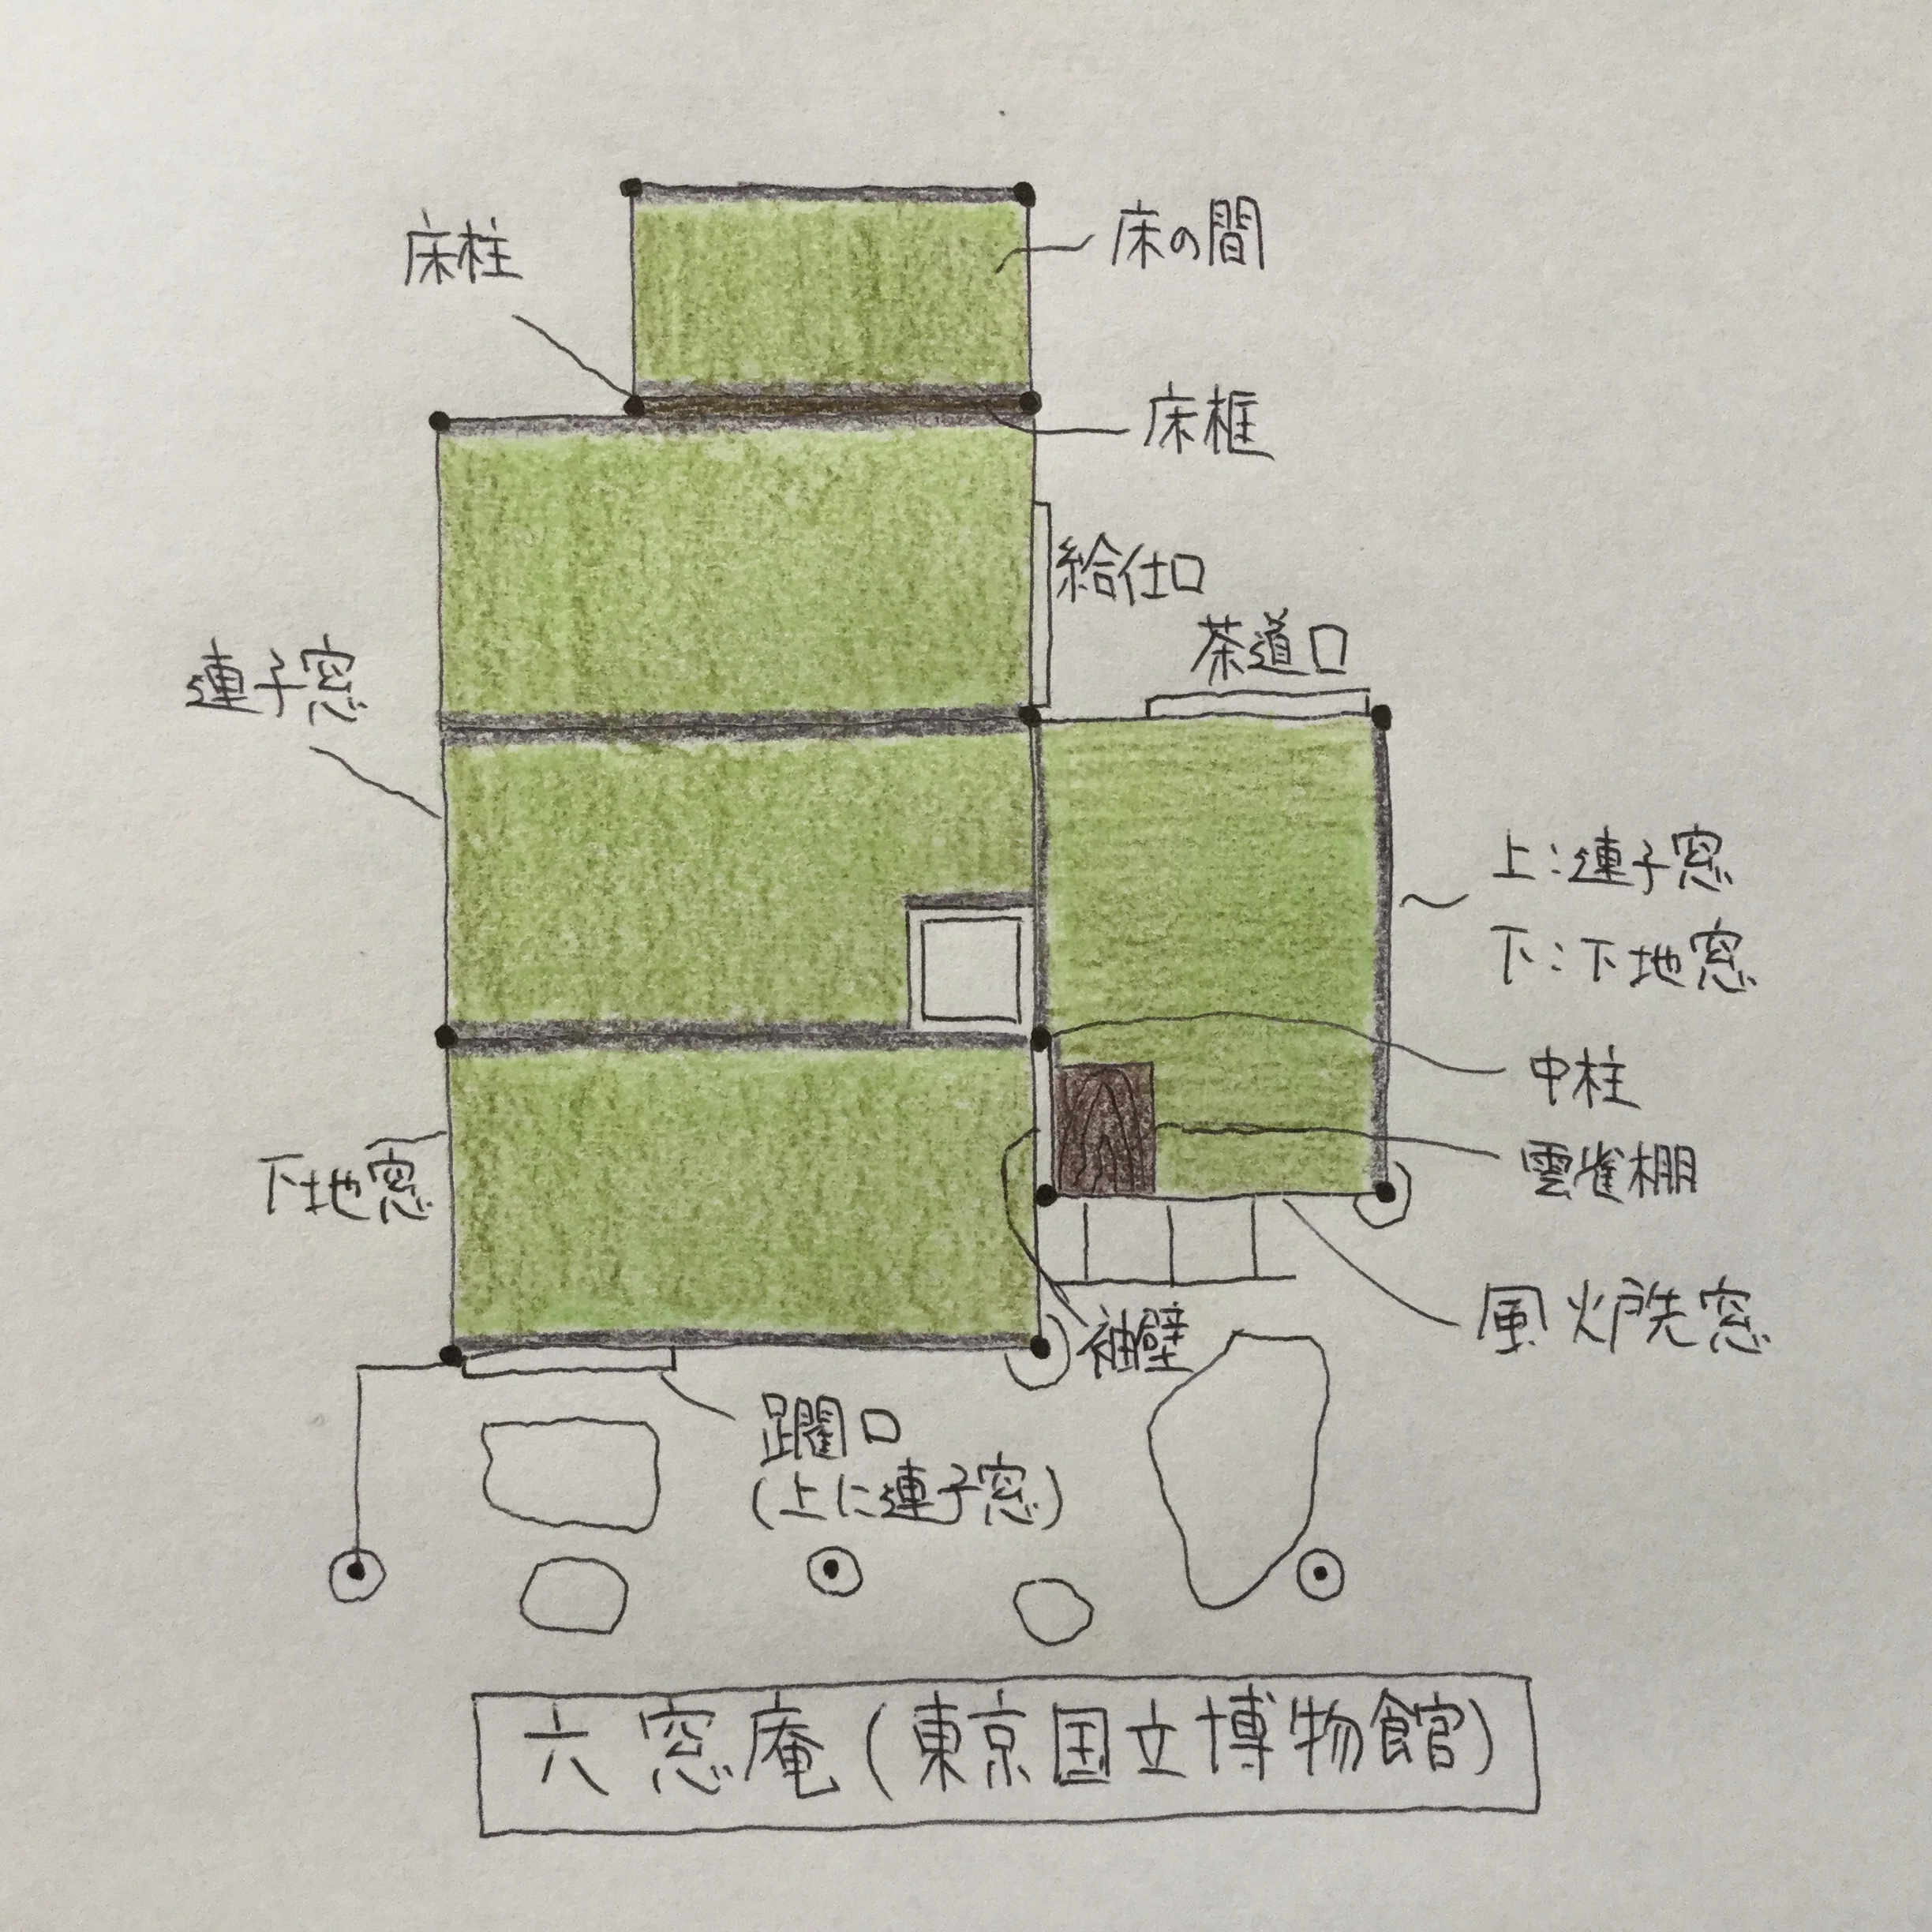 東京国立博物館の庭園内にある茶室 六窓庵 の間取り 平面図 や由来を解説してみました 上野 東博 Base Mag